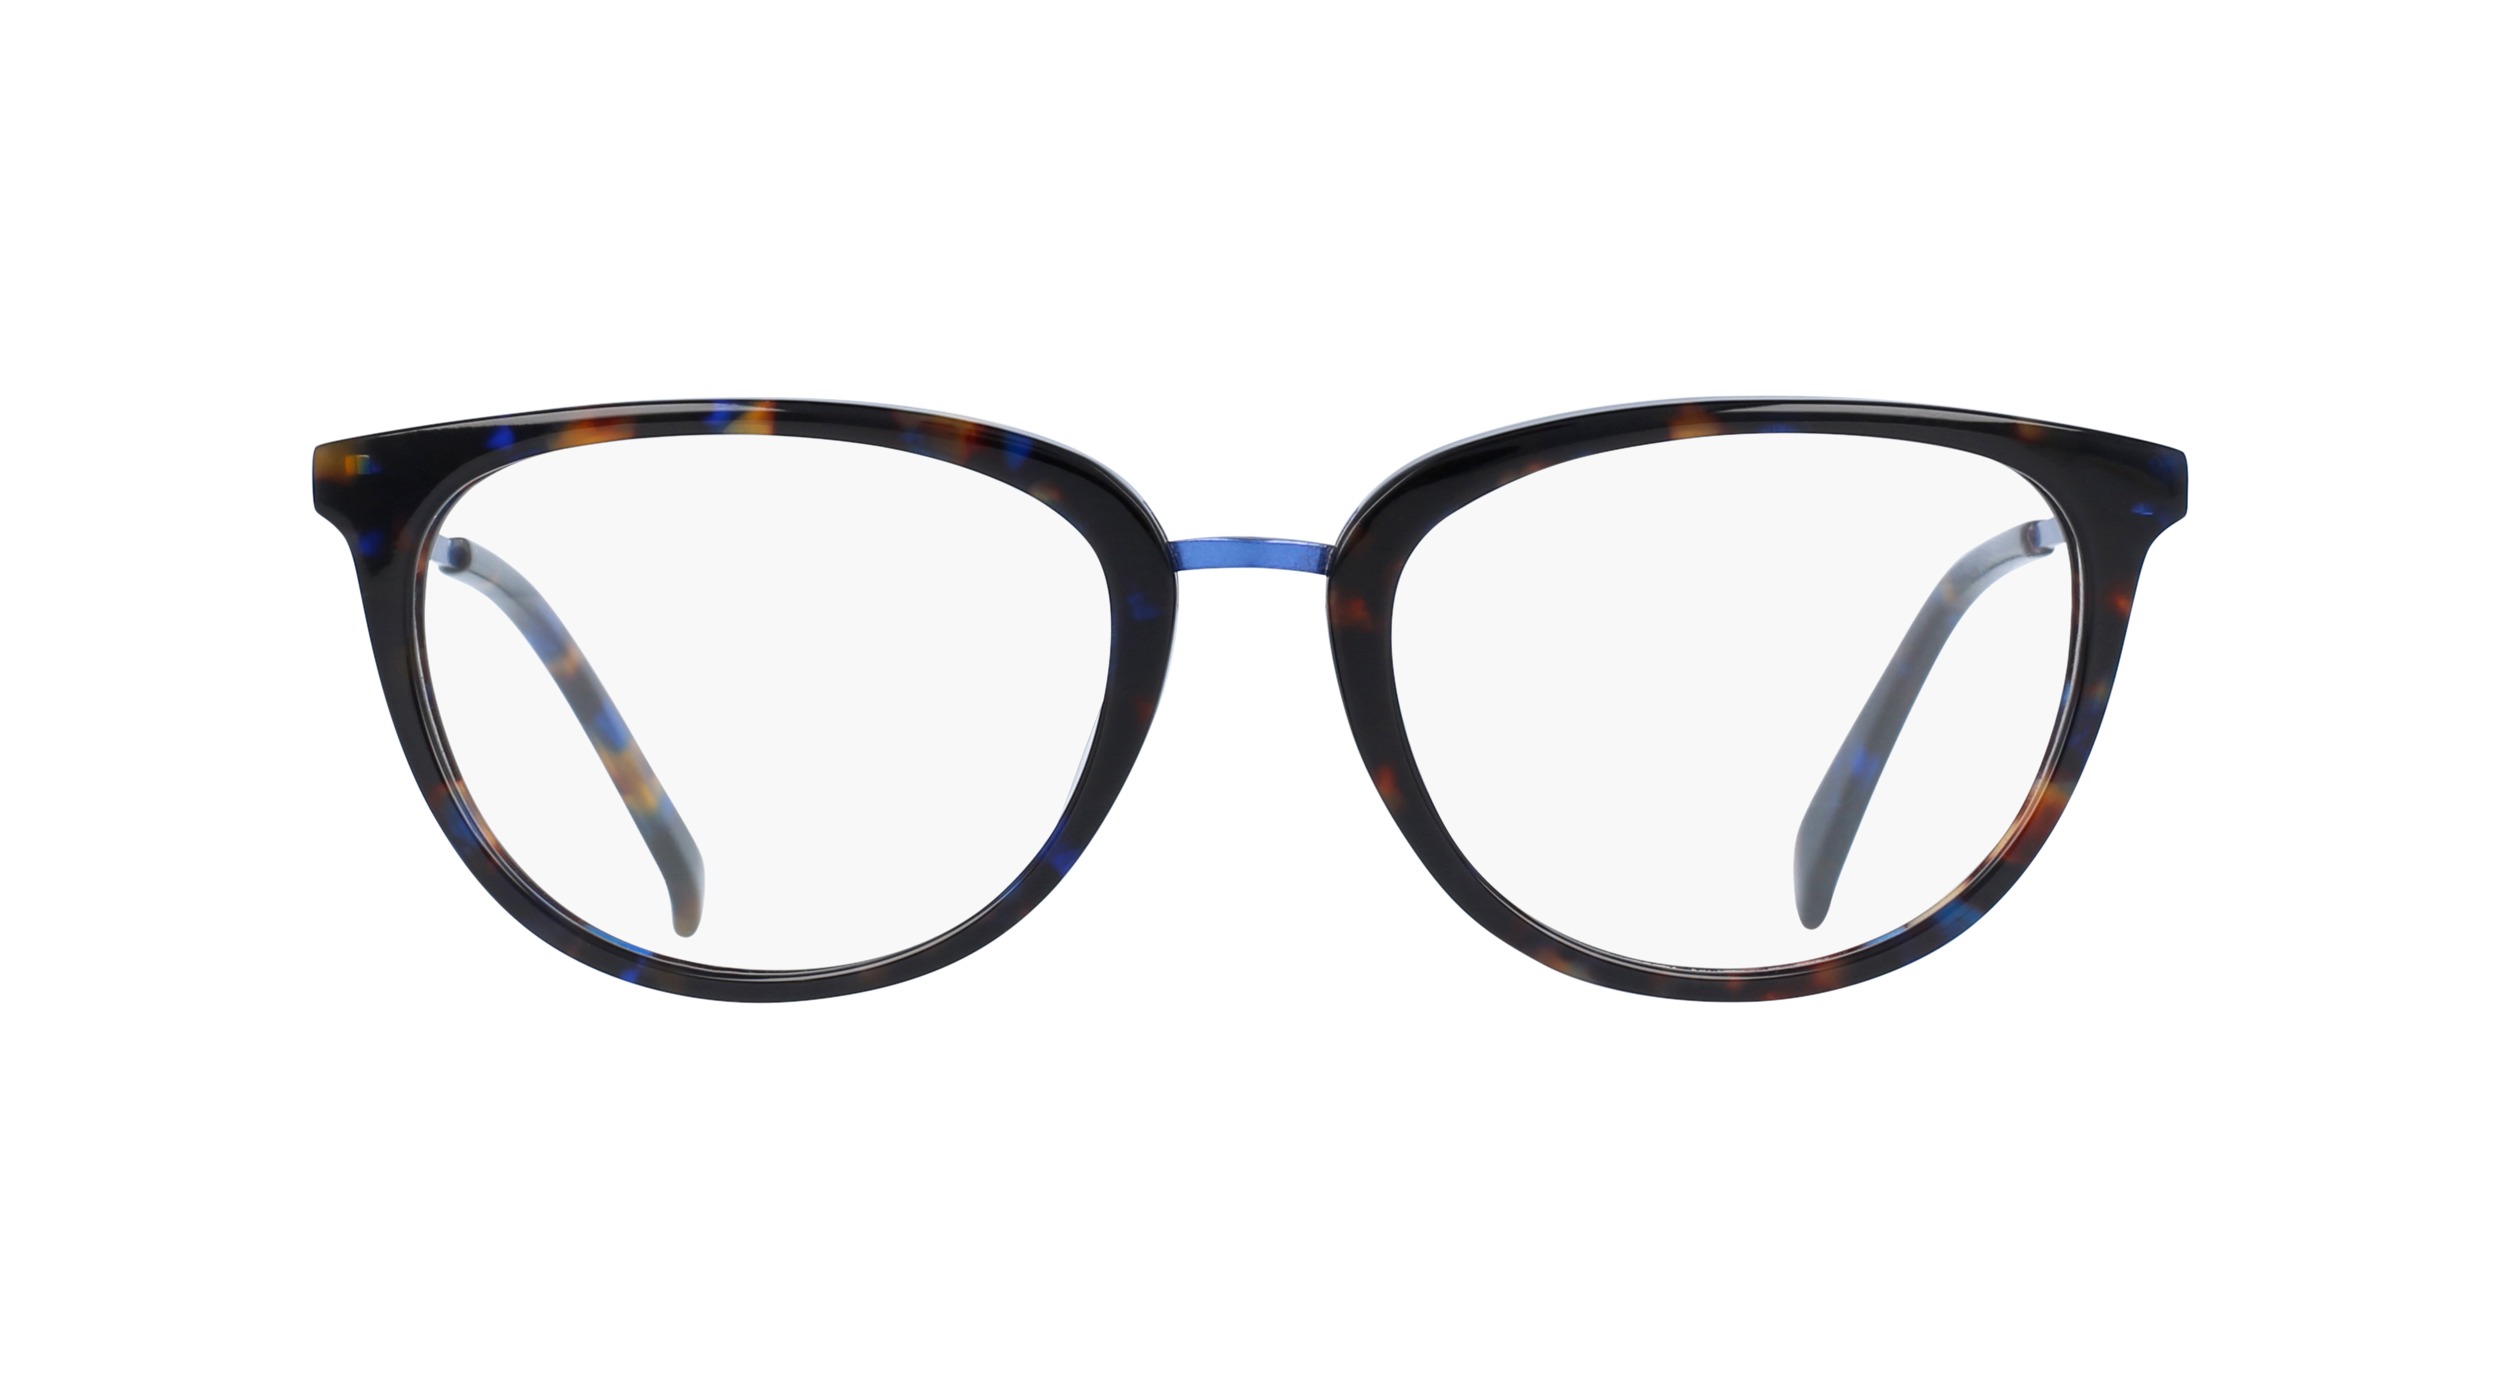 optic2000-lunettes-zest